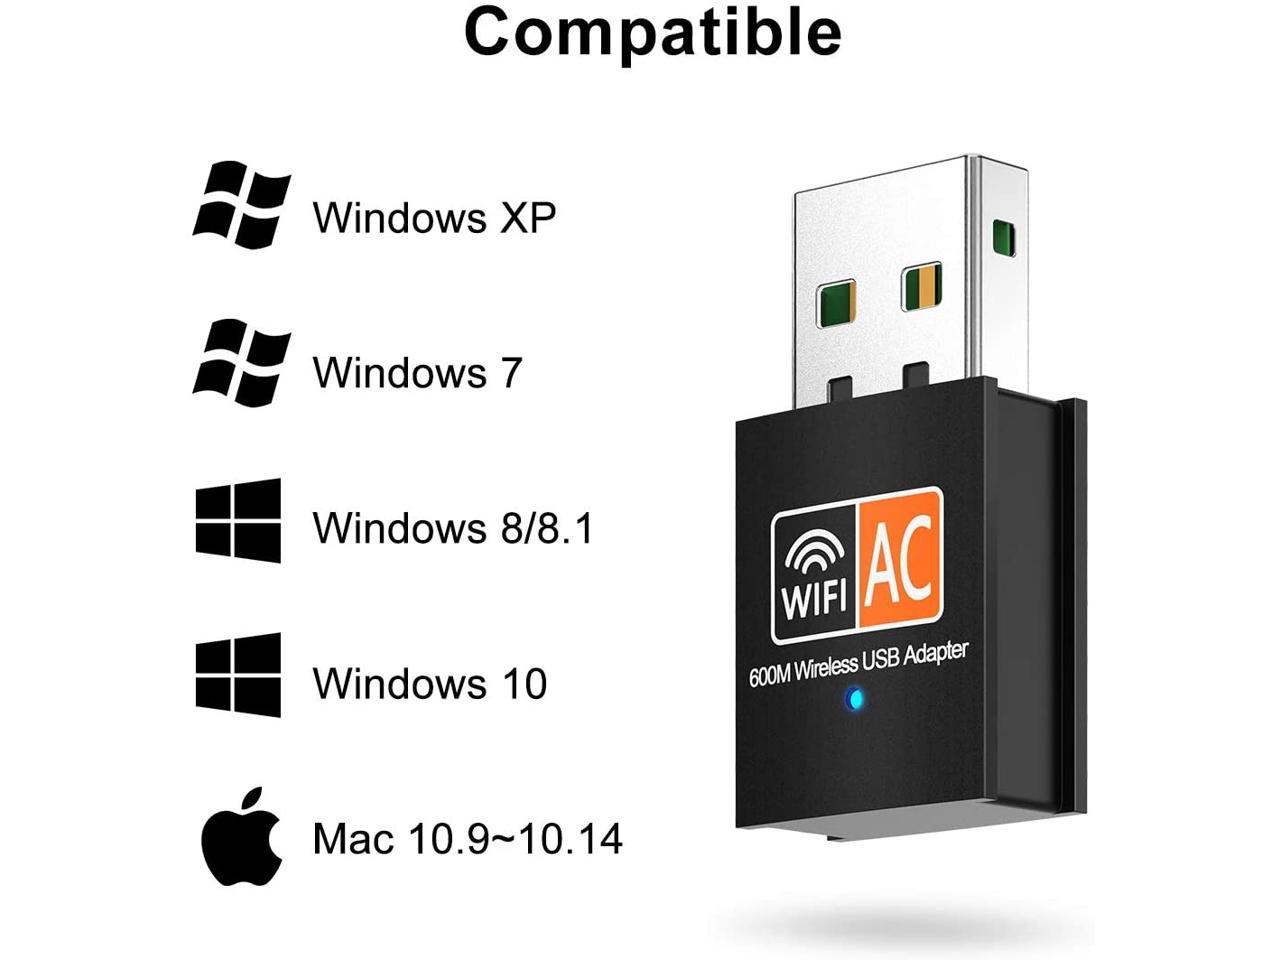 Windows XP/7/8/10 cifrado Wi-Fi Mac OS X Adaptador inalámbrico de Doble Banda de 600 Mbps 2,4/5 GHz USB WiFi Antena LAN Adaptador 802.11ac/a/b/g/n Compatible con Wi-Fi Hotspot innOrca